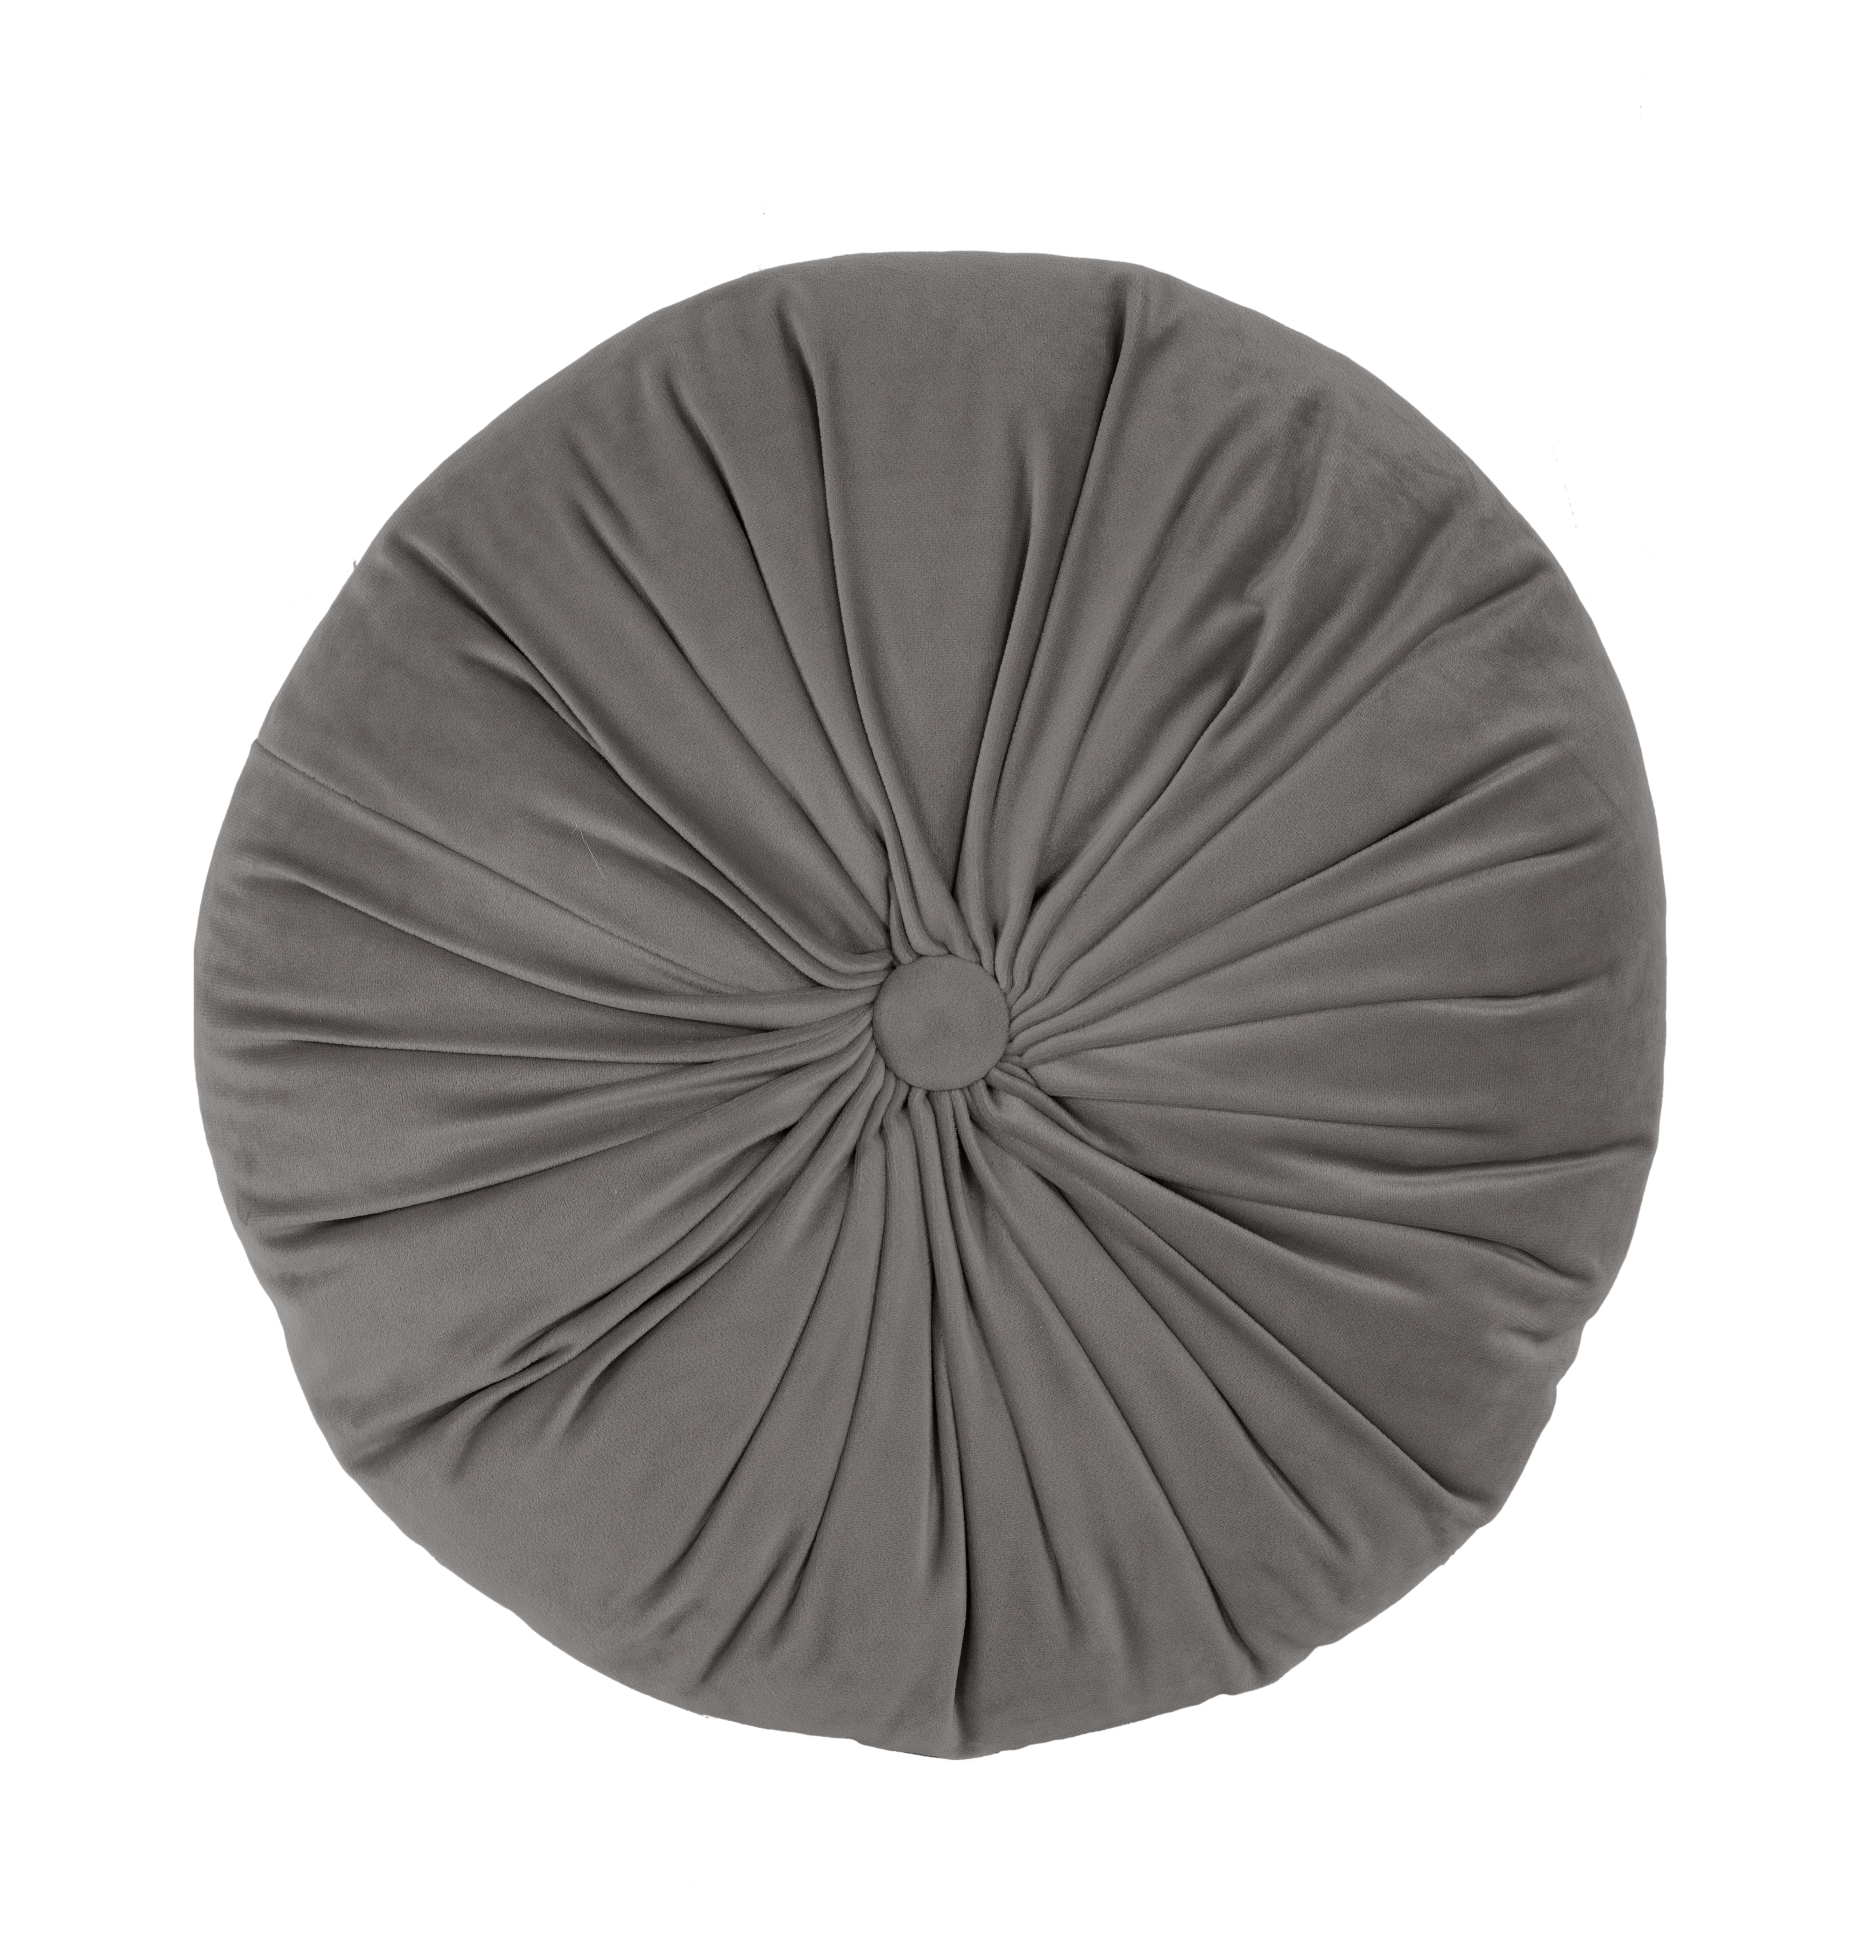 Cushion (filled) Microvelvet dark grey ROUND (1 button)